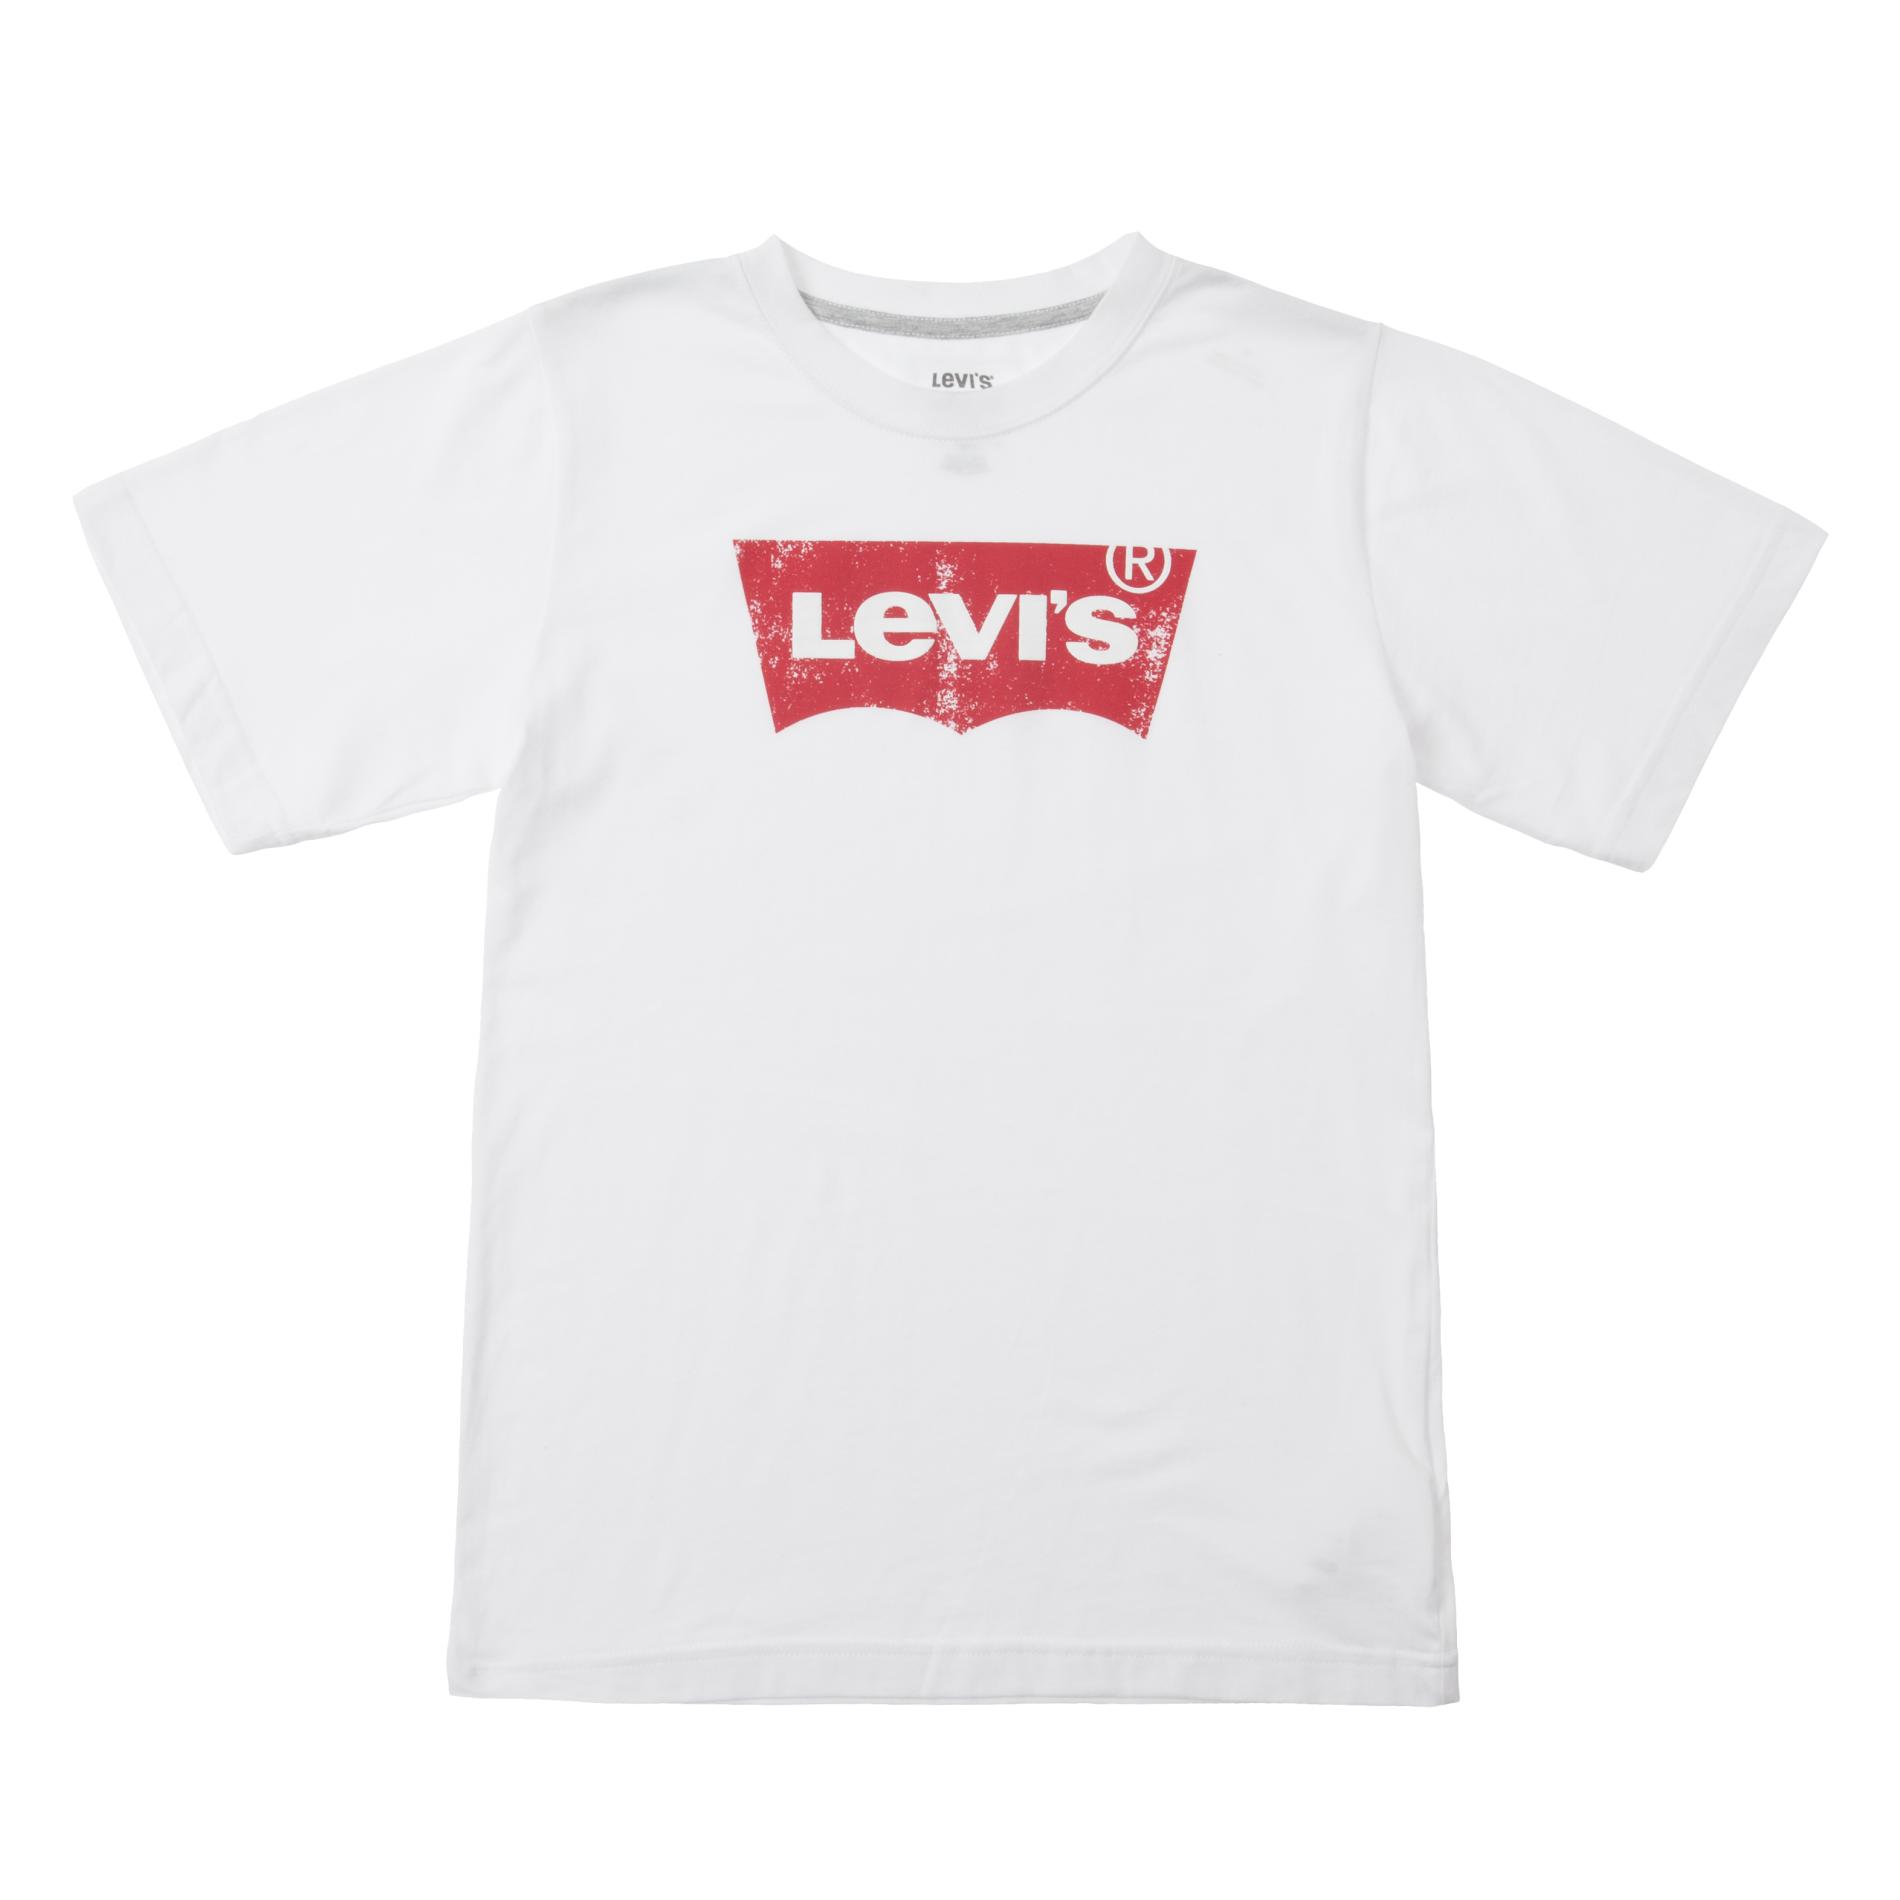 Levi's Boy's Graphic T-Shirt